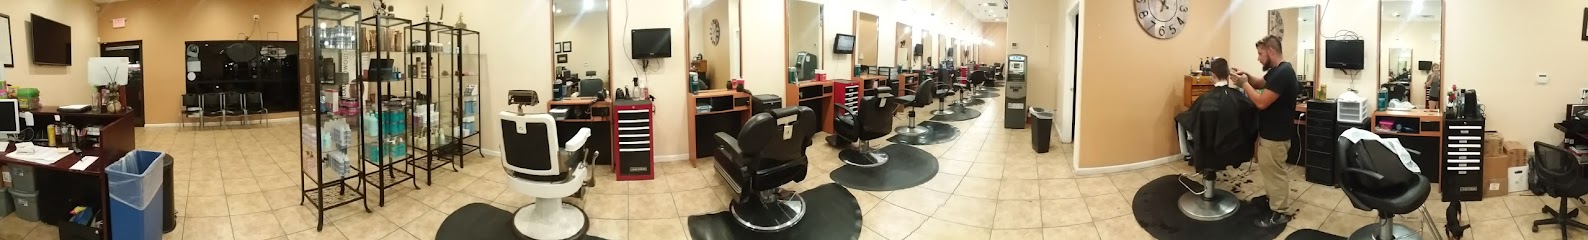 Maravilla Barber Shop